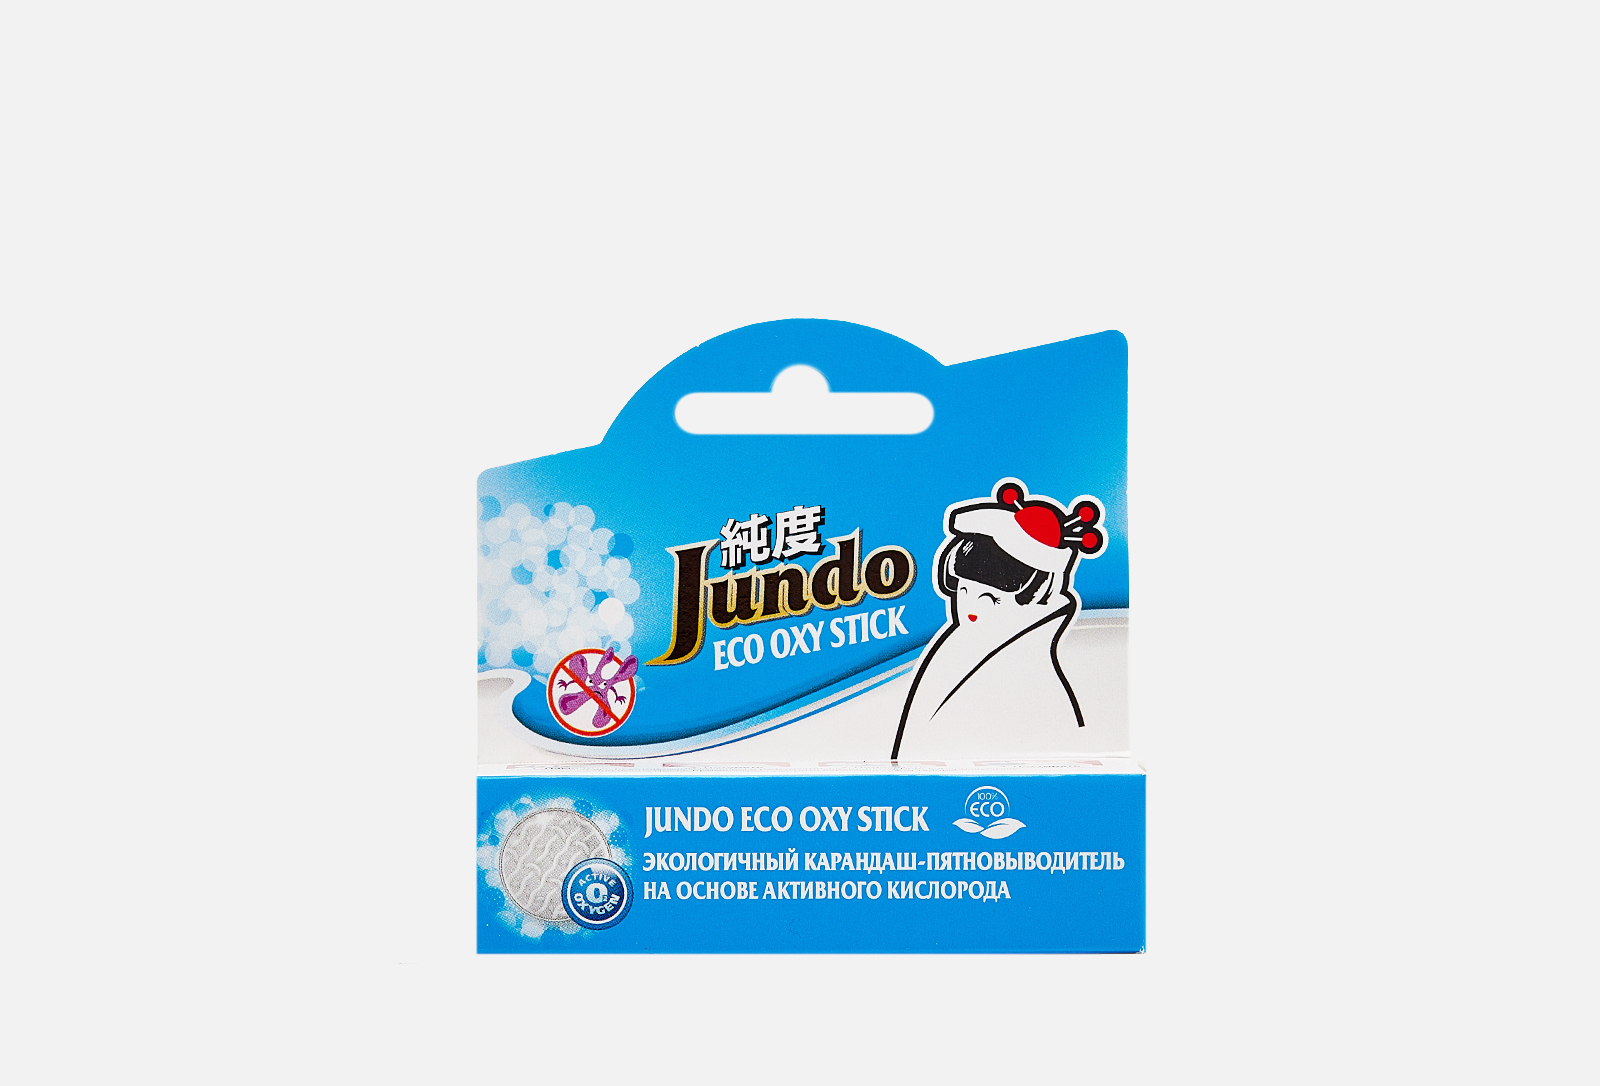 Jundo -пятновыводитель oxy stick 35 г —  